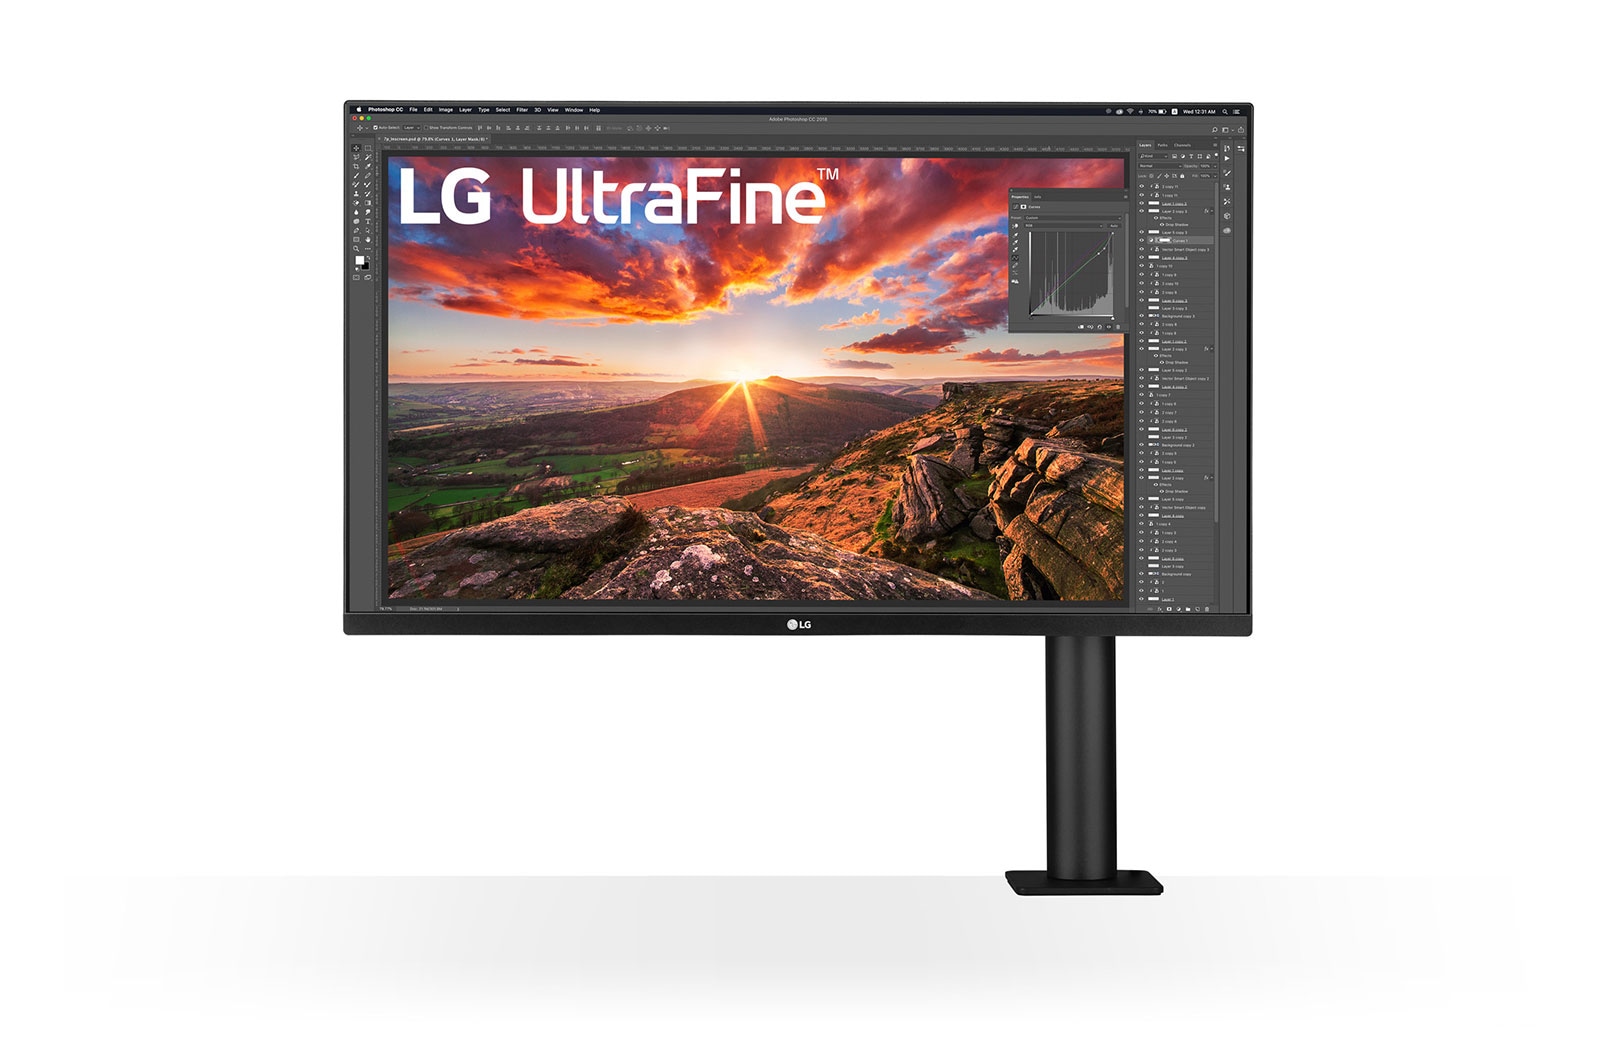 LG 31,5 Zoll UltraFine™ Ergo Monitor mit HDR10, IPS und UHD 4K-Auflösung, 32UN880P-B